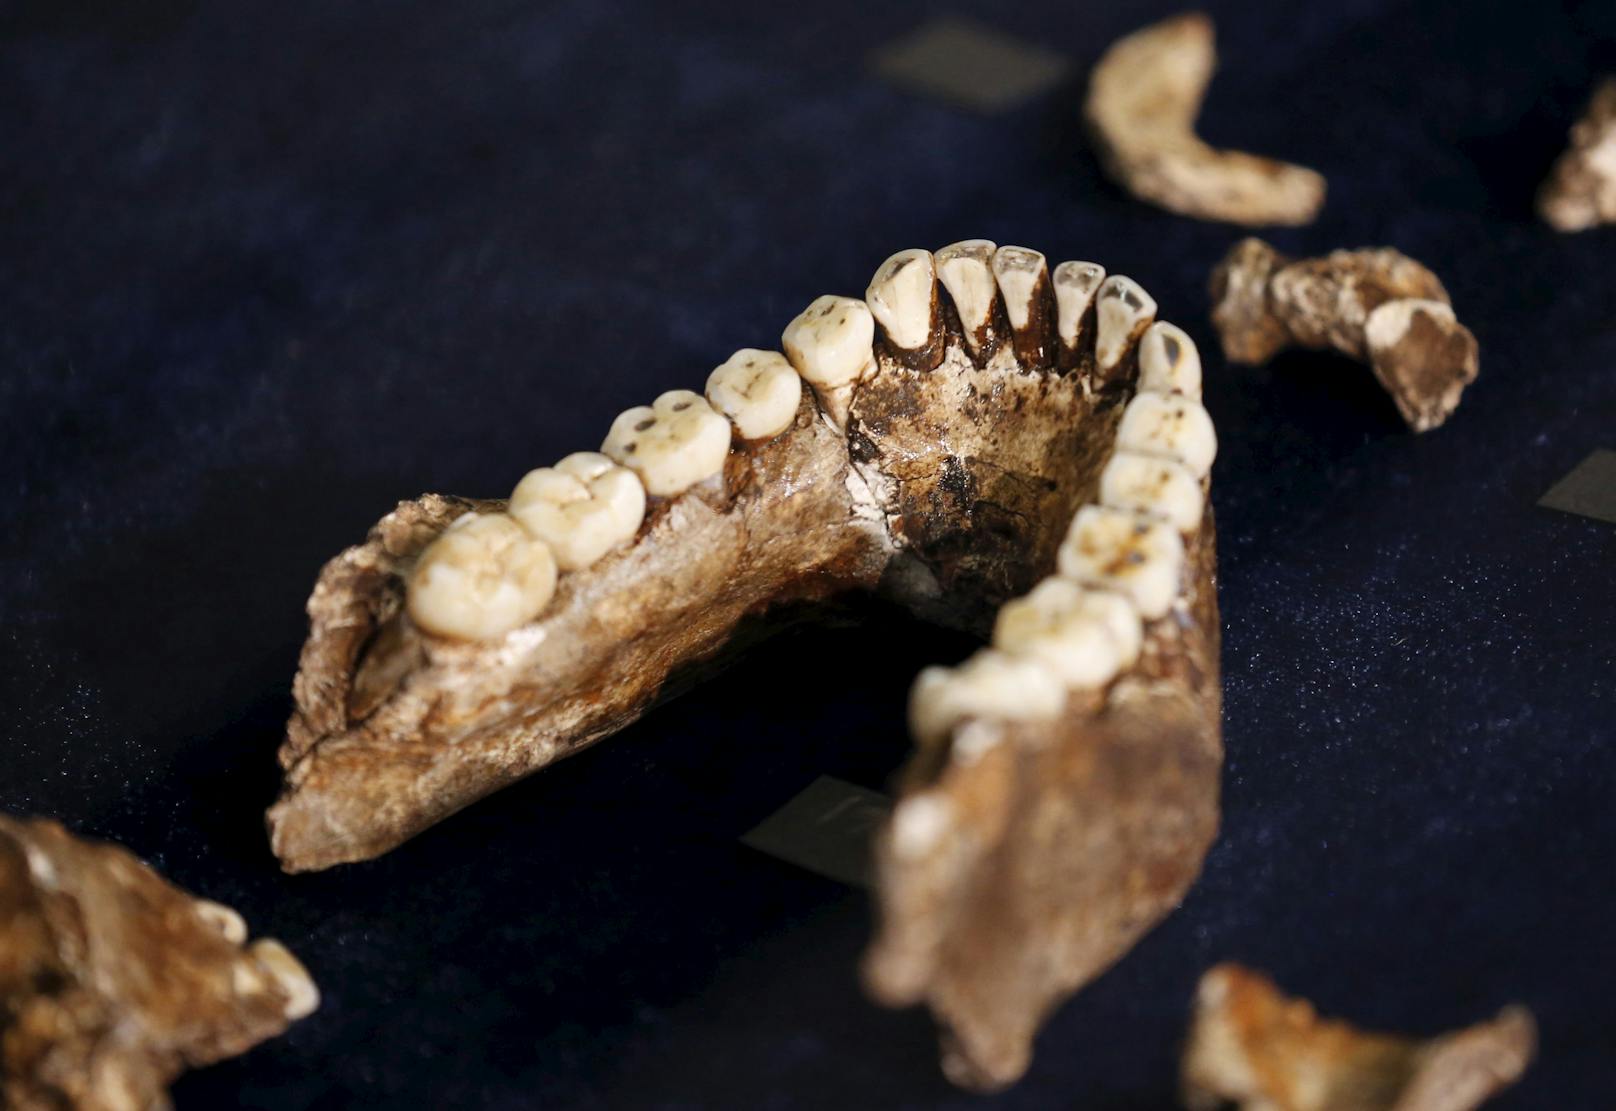 Die Schultern des Homo naledi - die zum besseren Klettern ausgerichtet waren - und die Zähne (Bild) wiesen Ähnlichkeiten mit früheren Homininen wie dem Australopithecus auf.